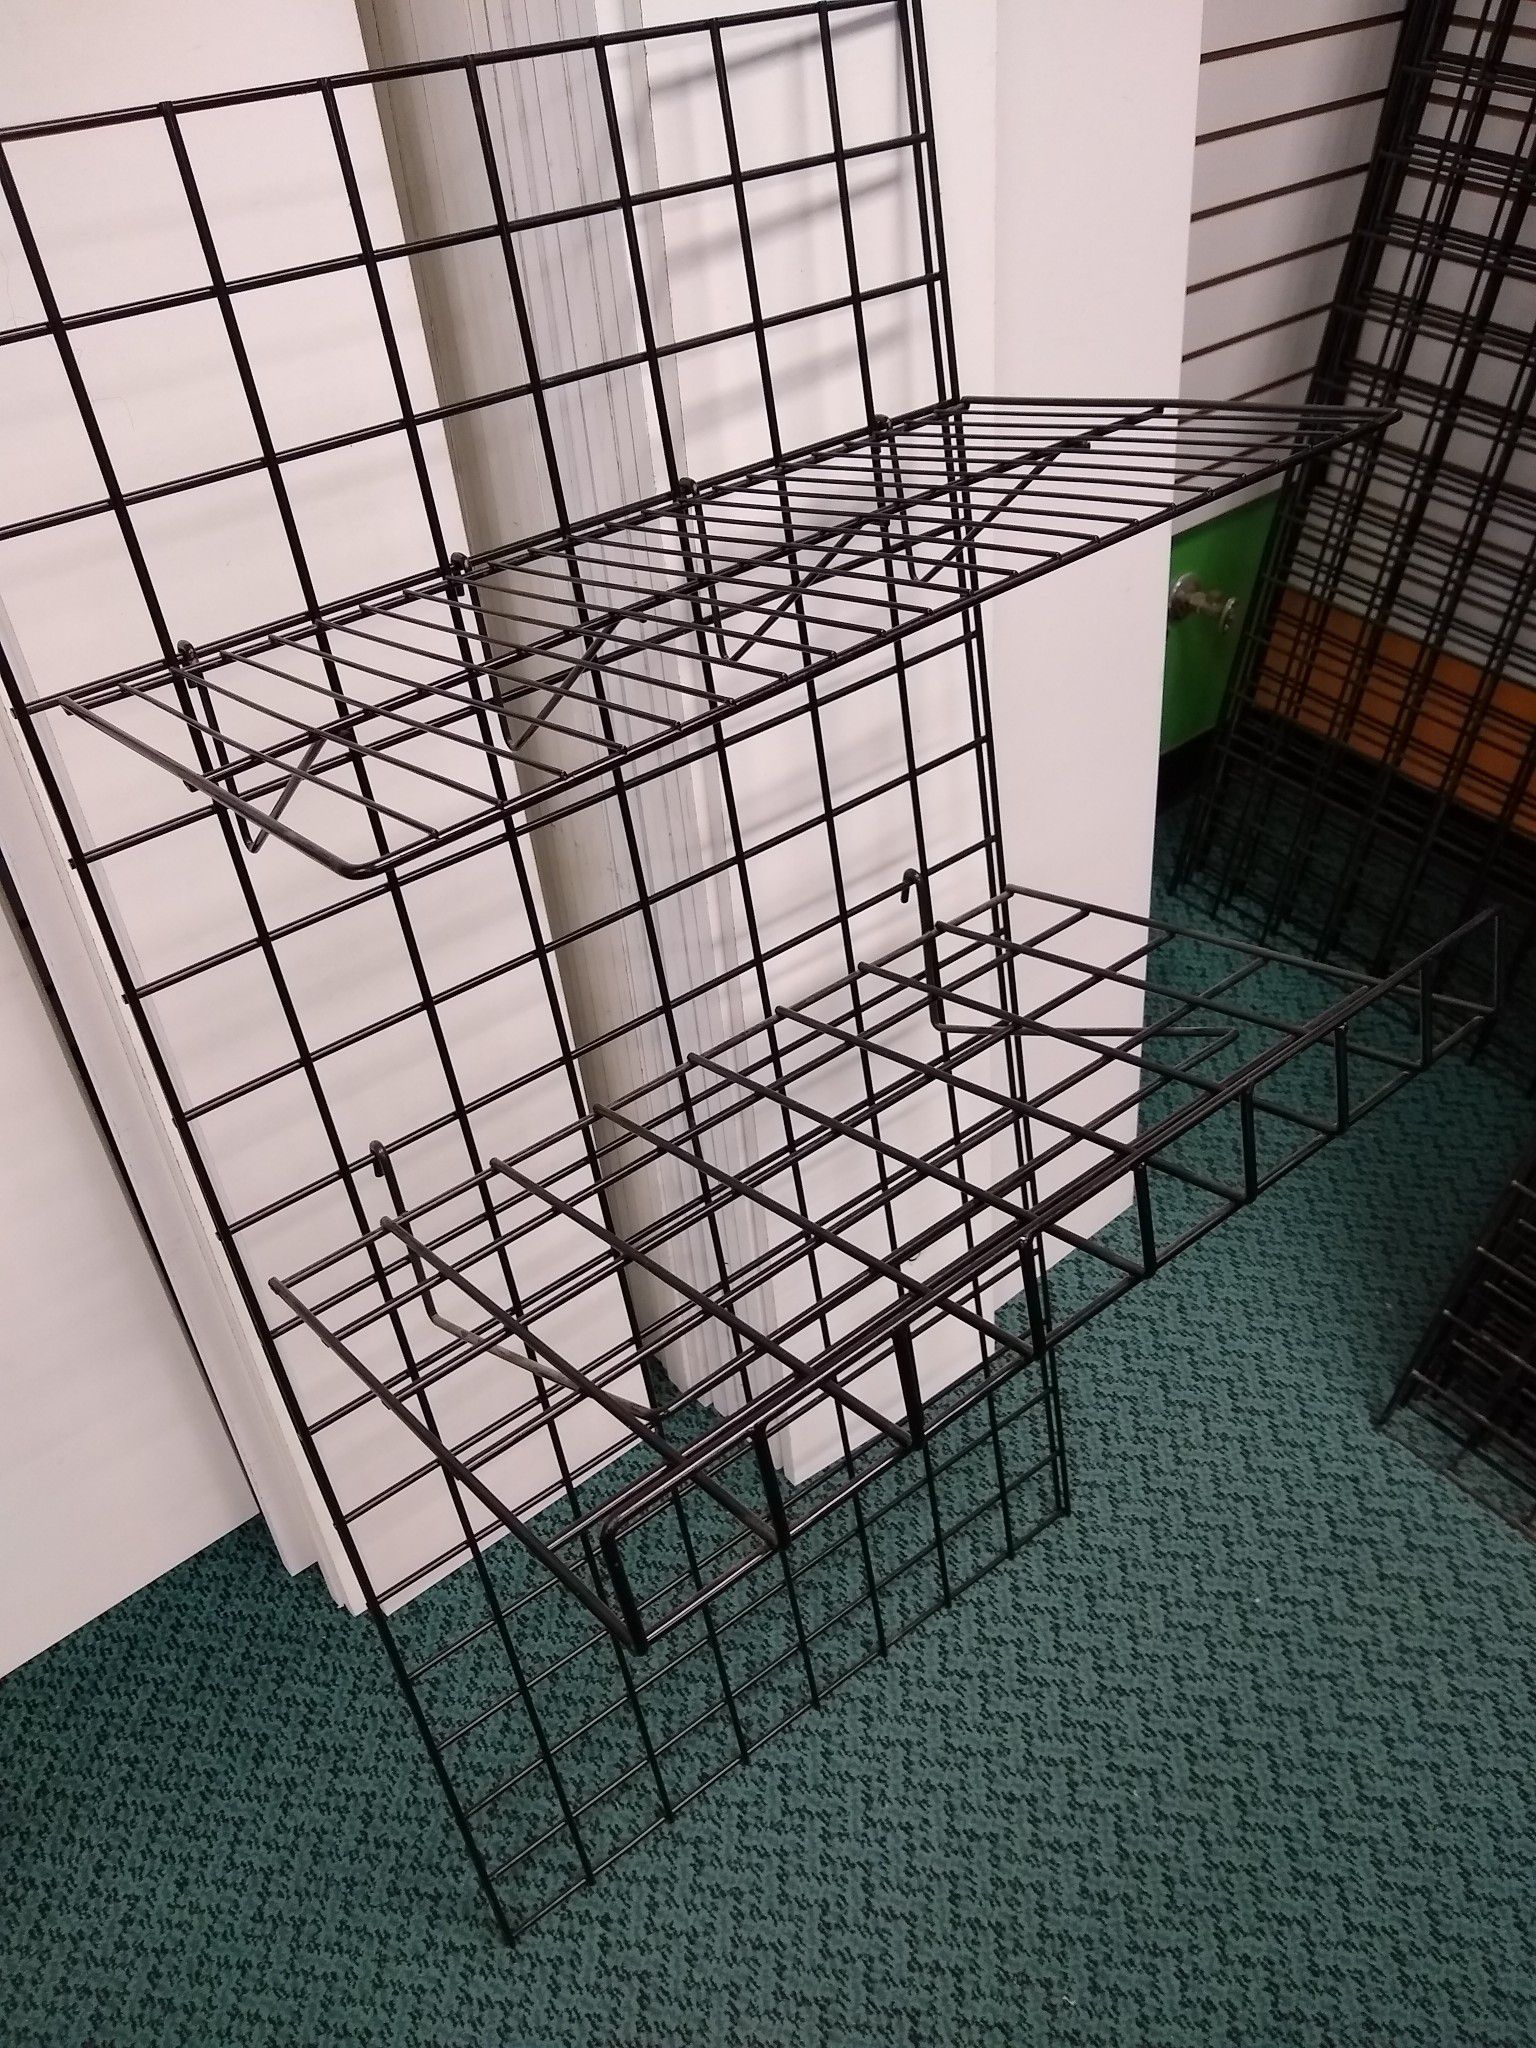 Grid shelves